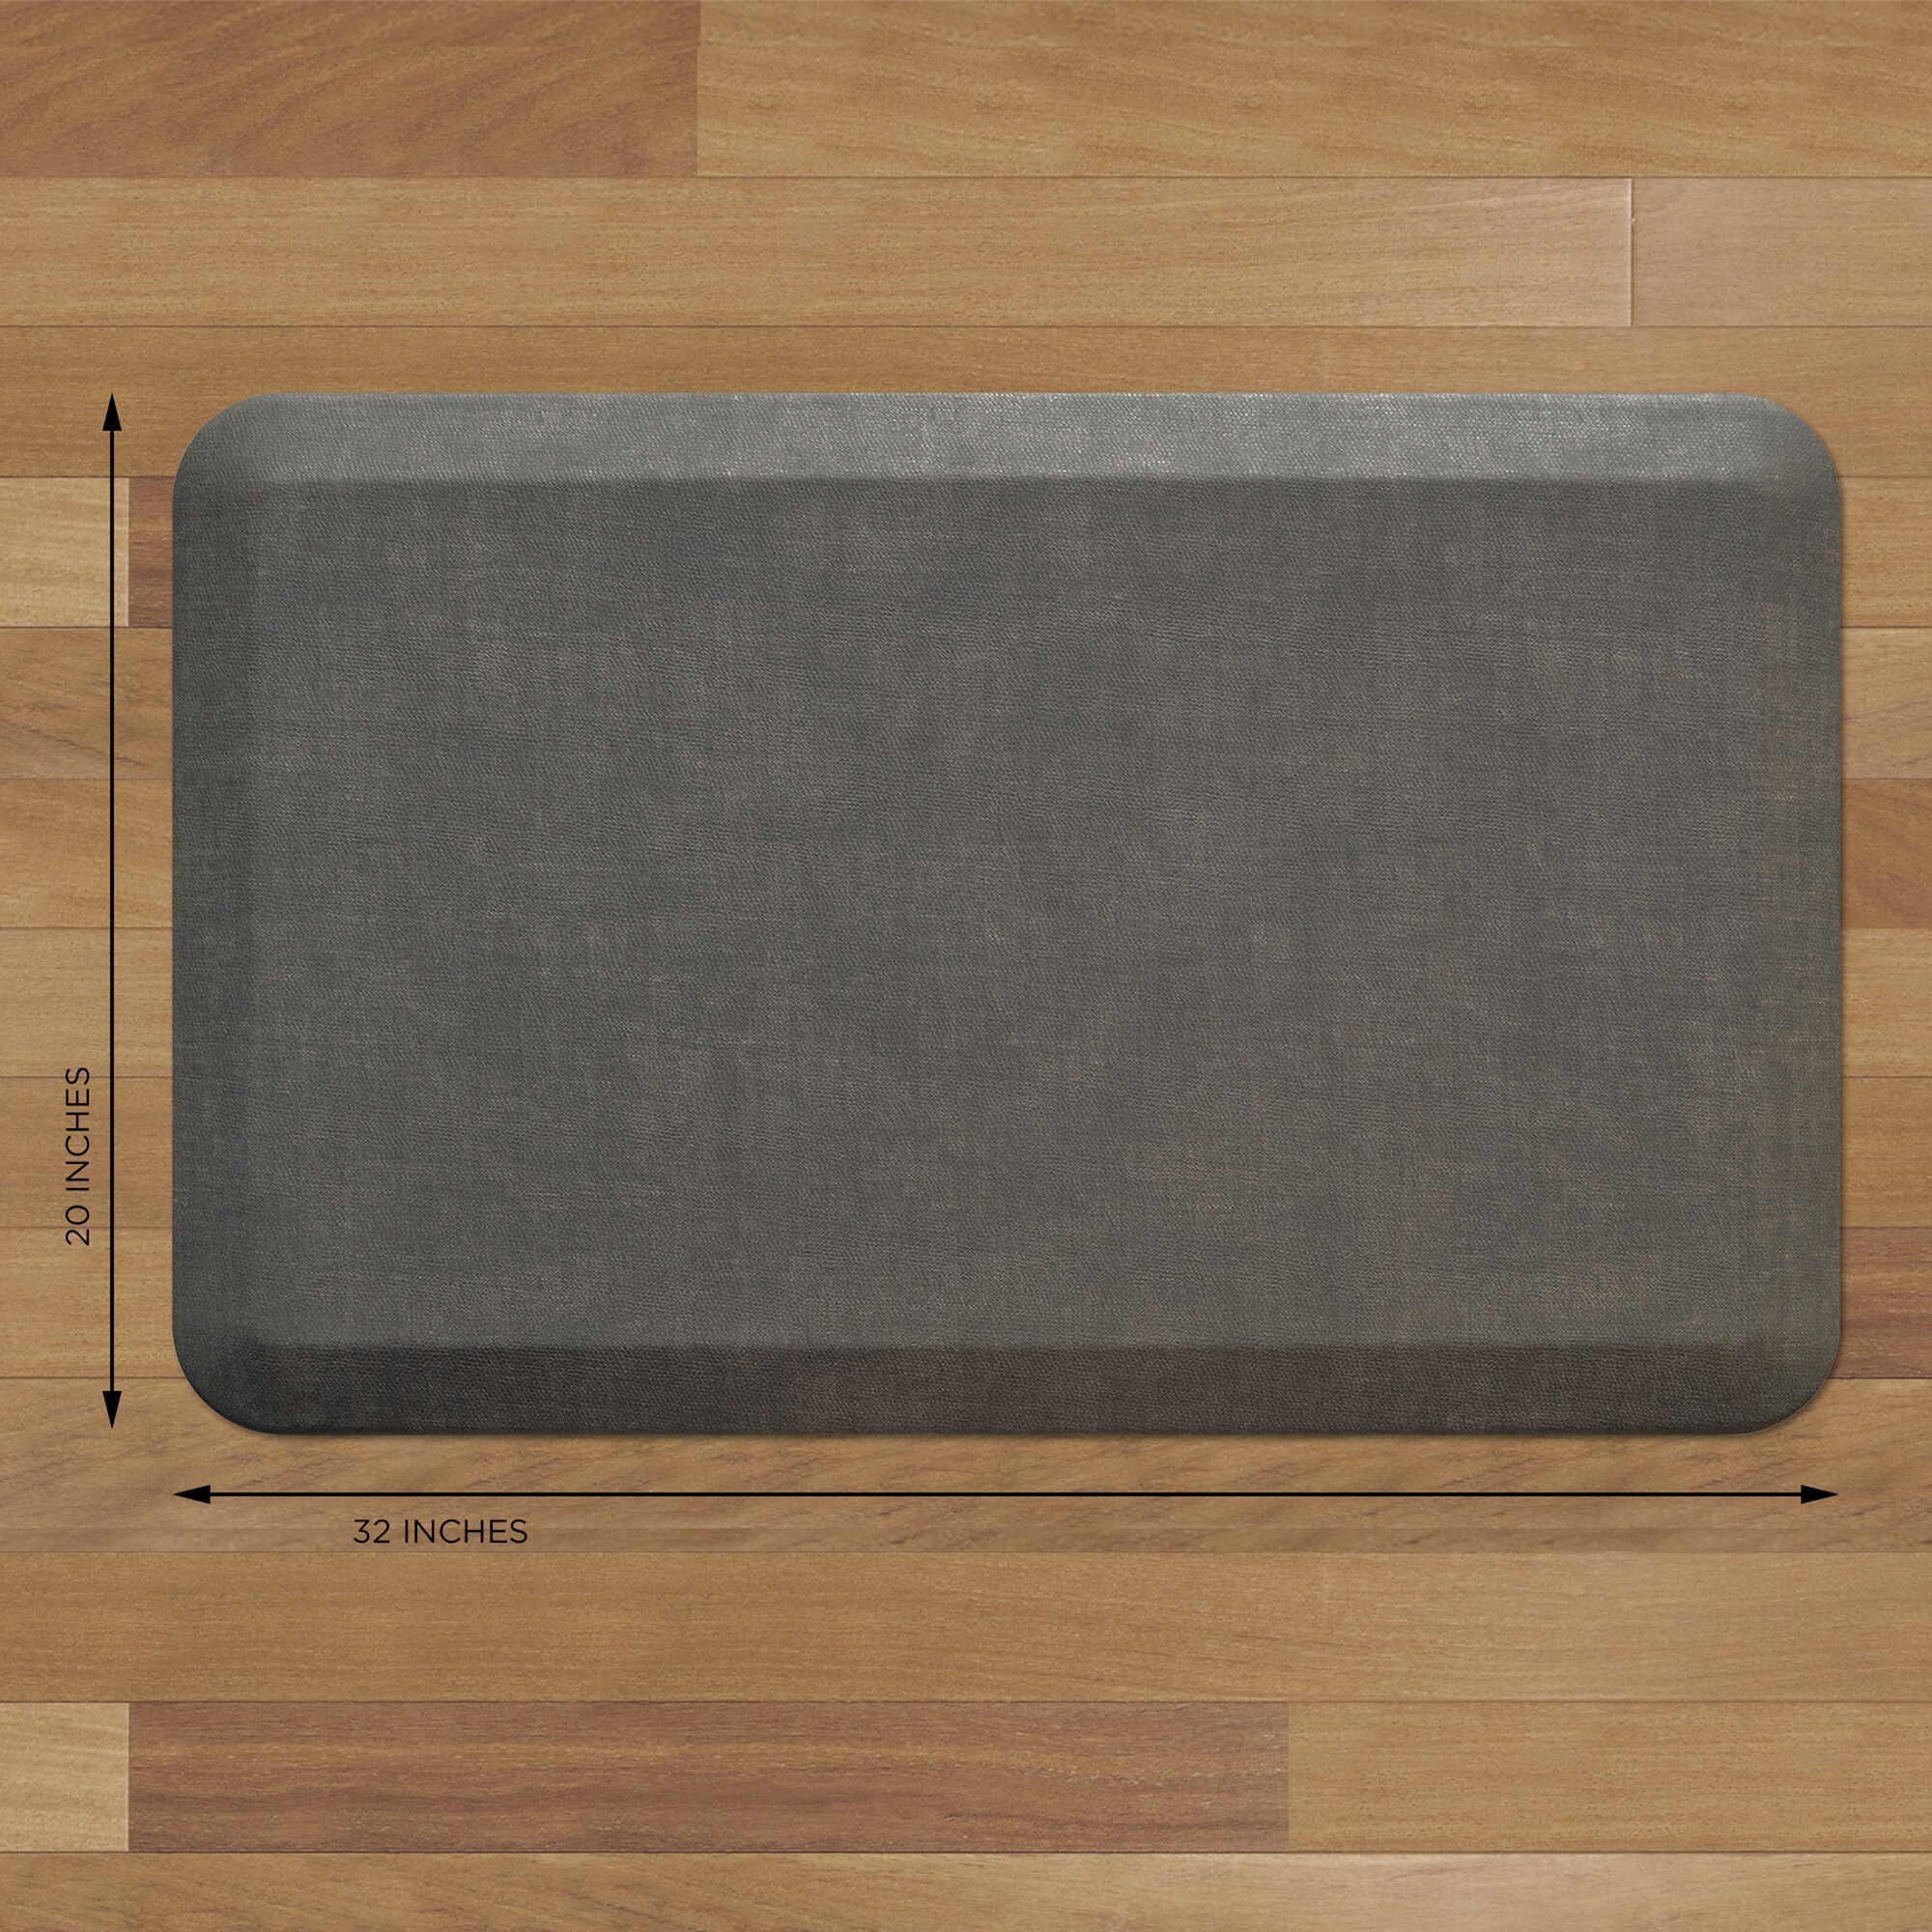  GelPro Anti-Fatigue Designer Comfort Kitchen Floor Mat